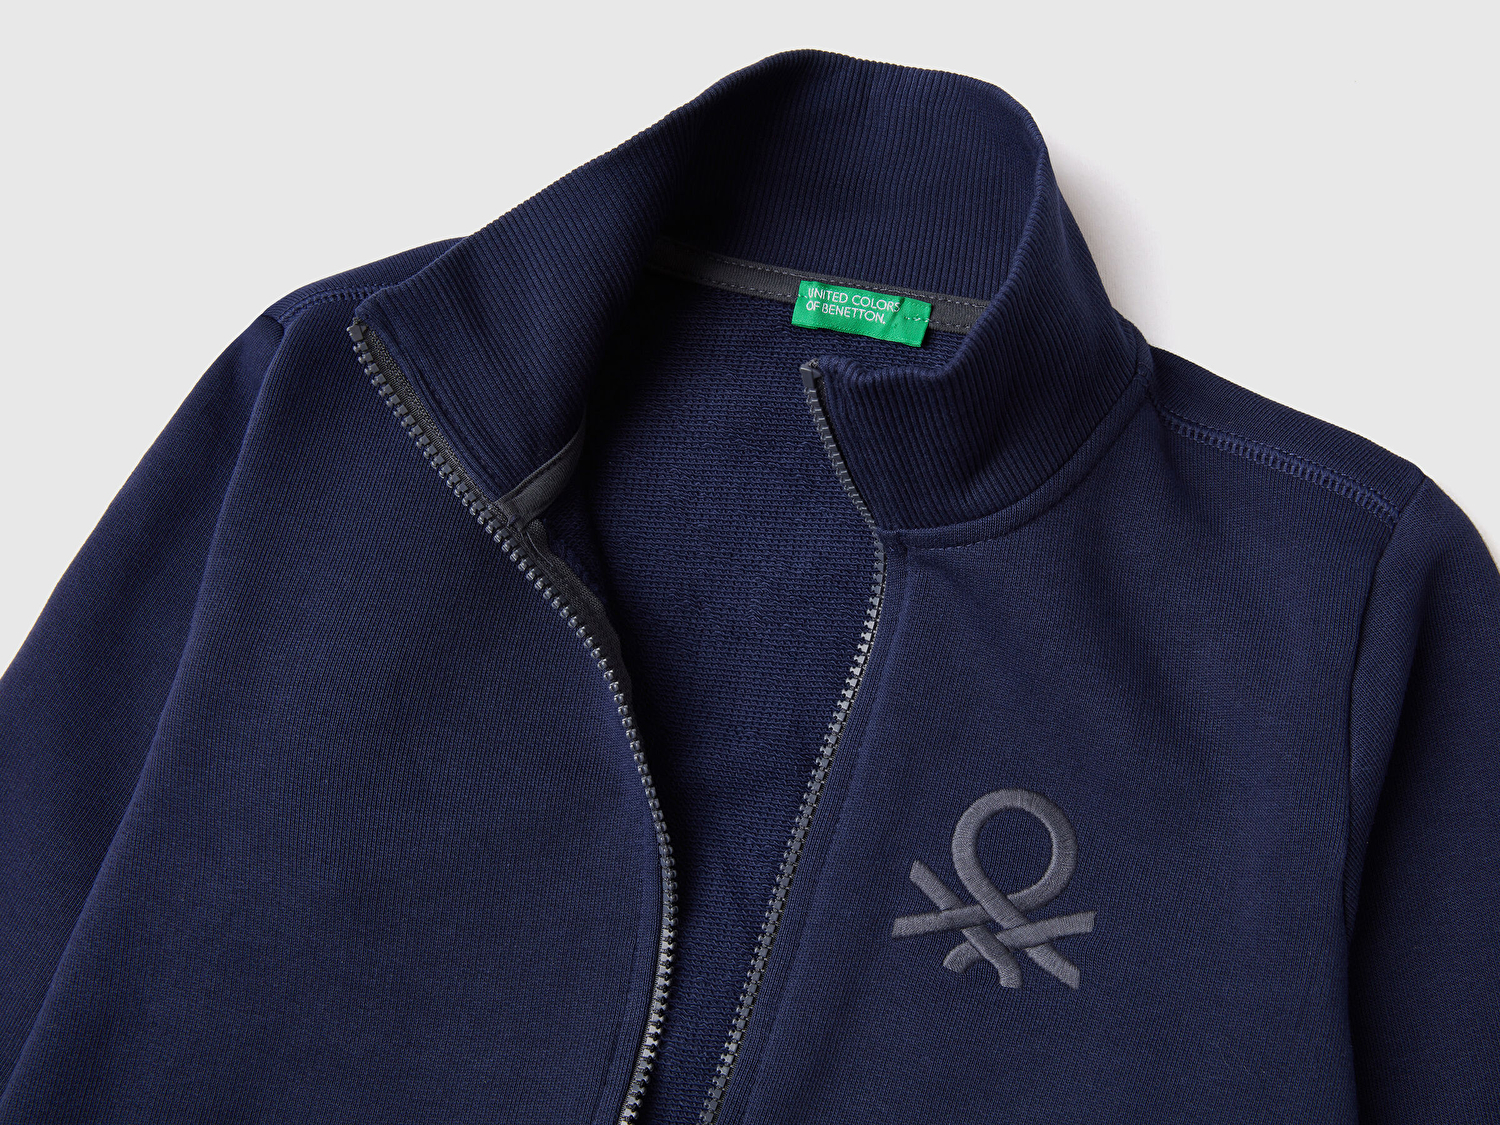 Benetton Erkek Çocuk Lacivert Logolu Sweatshirt